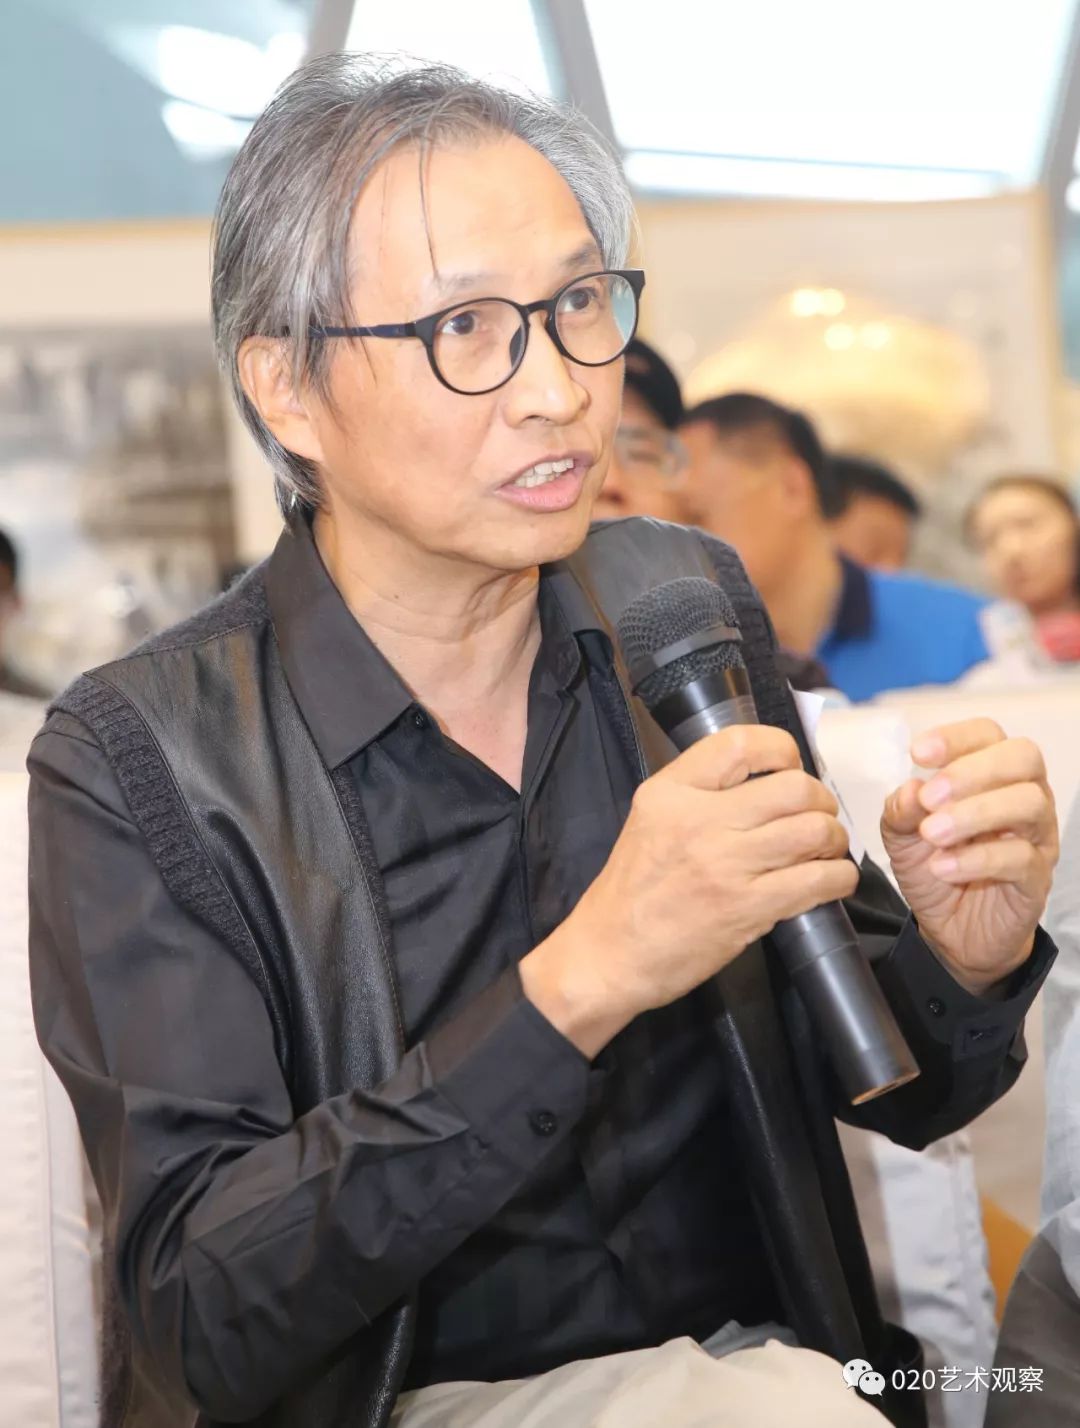 广州美术学院教授张弘发言张弘则回忆了三十多年前对水乡画的印象,他